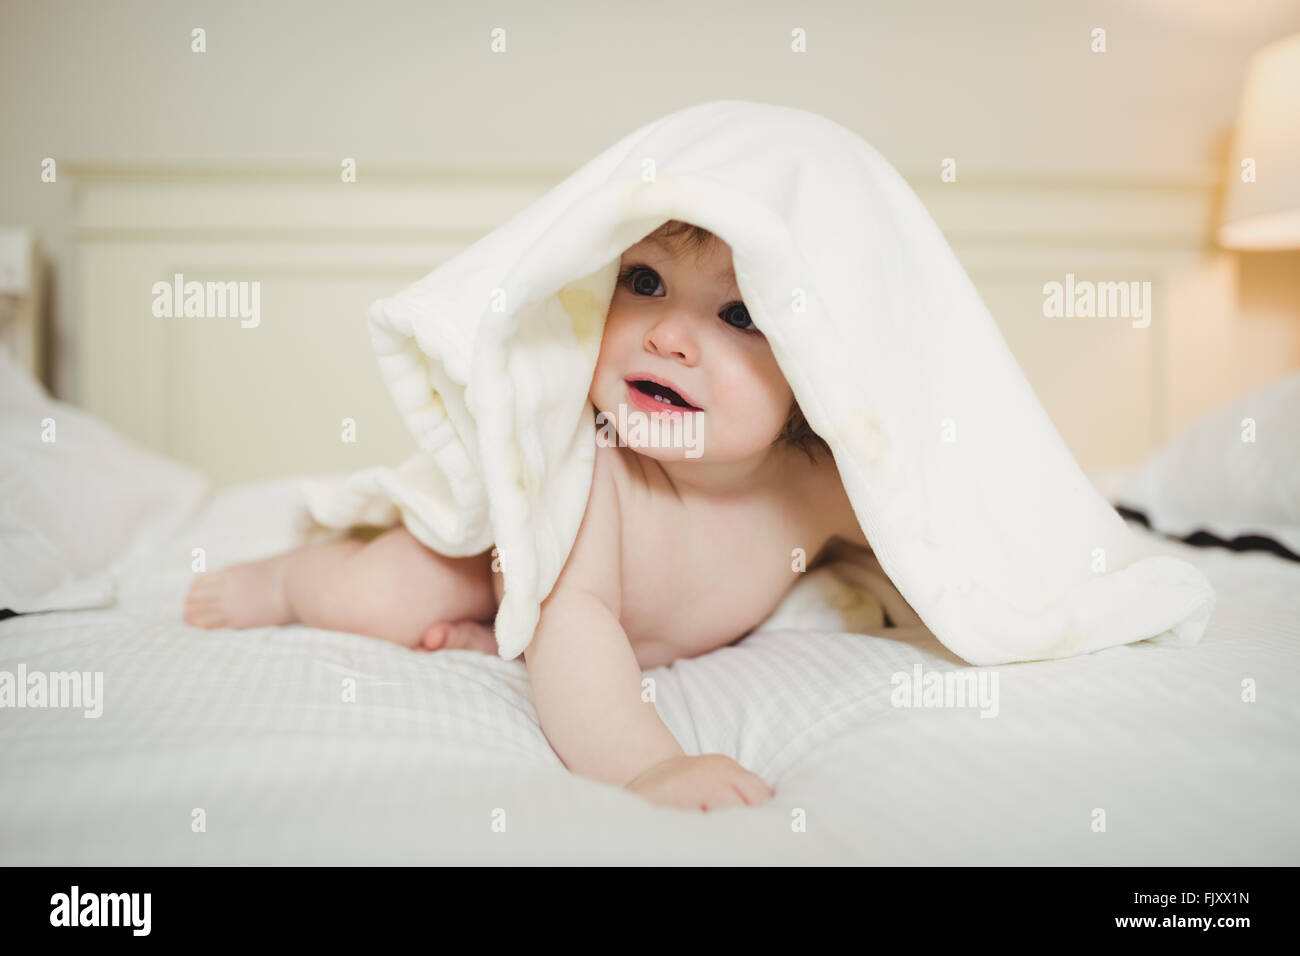 Niedliche Baby versteckt unter einer Decke Stockfoto